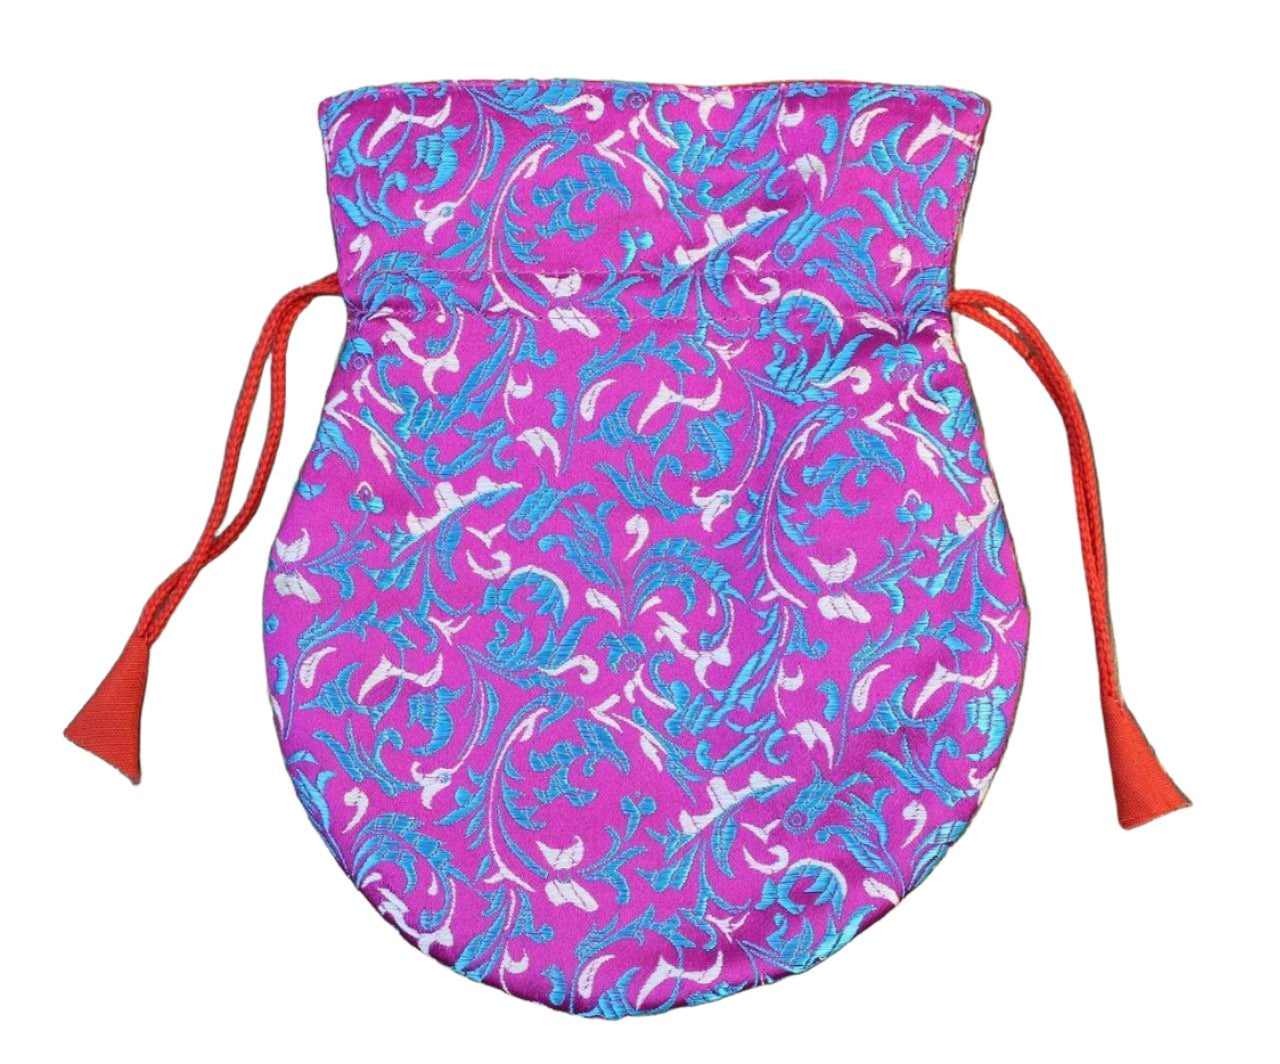 Small Bright Purple Mala Bag Bracelet - DharmaShop